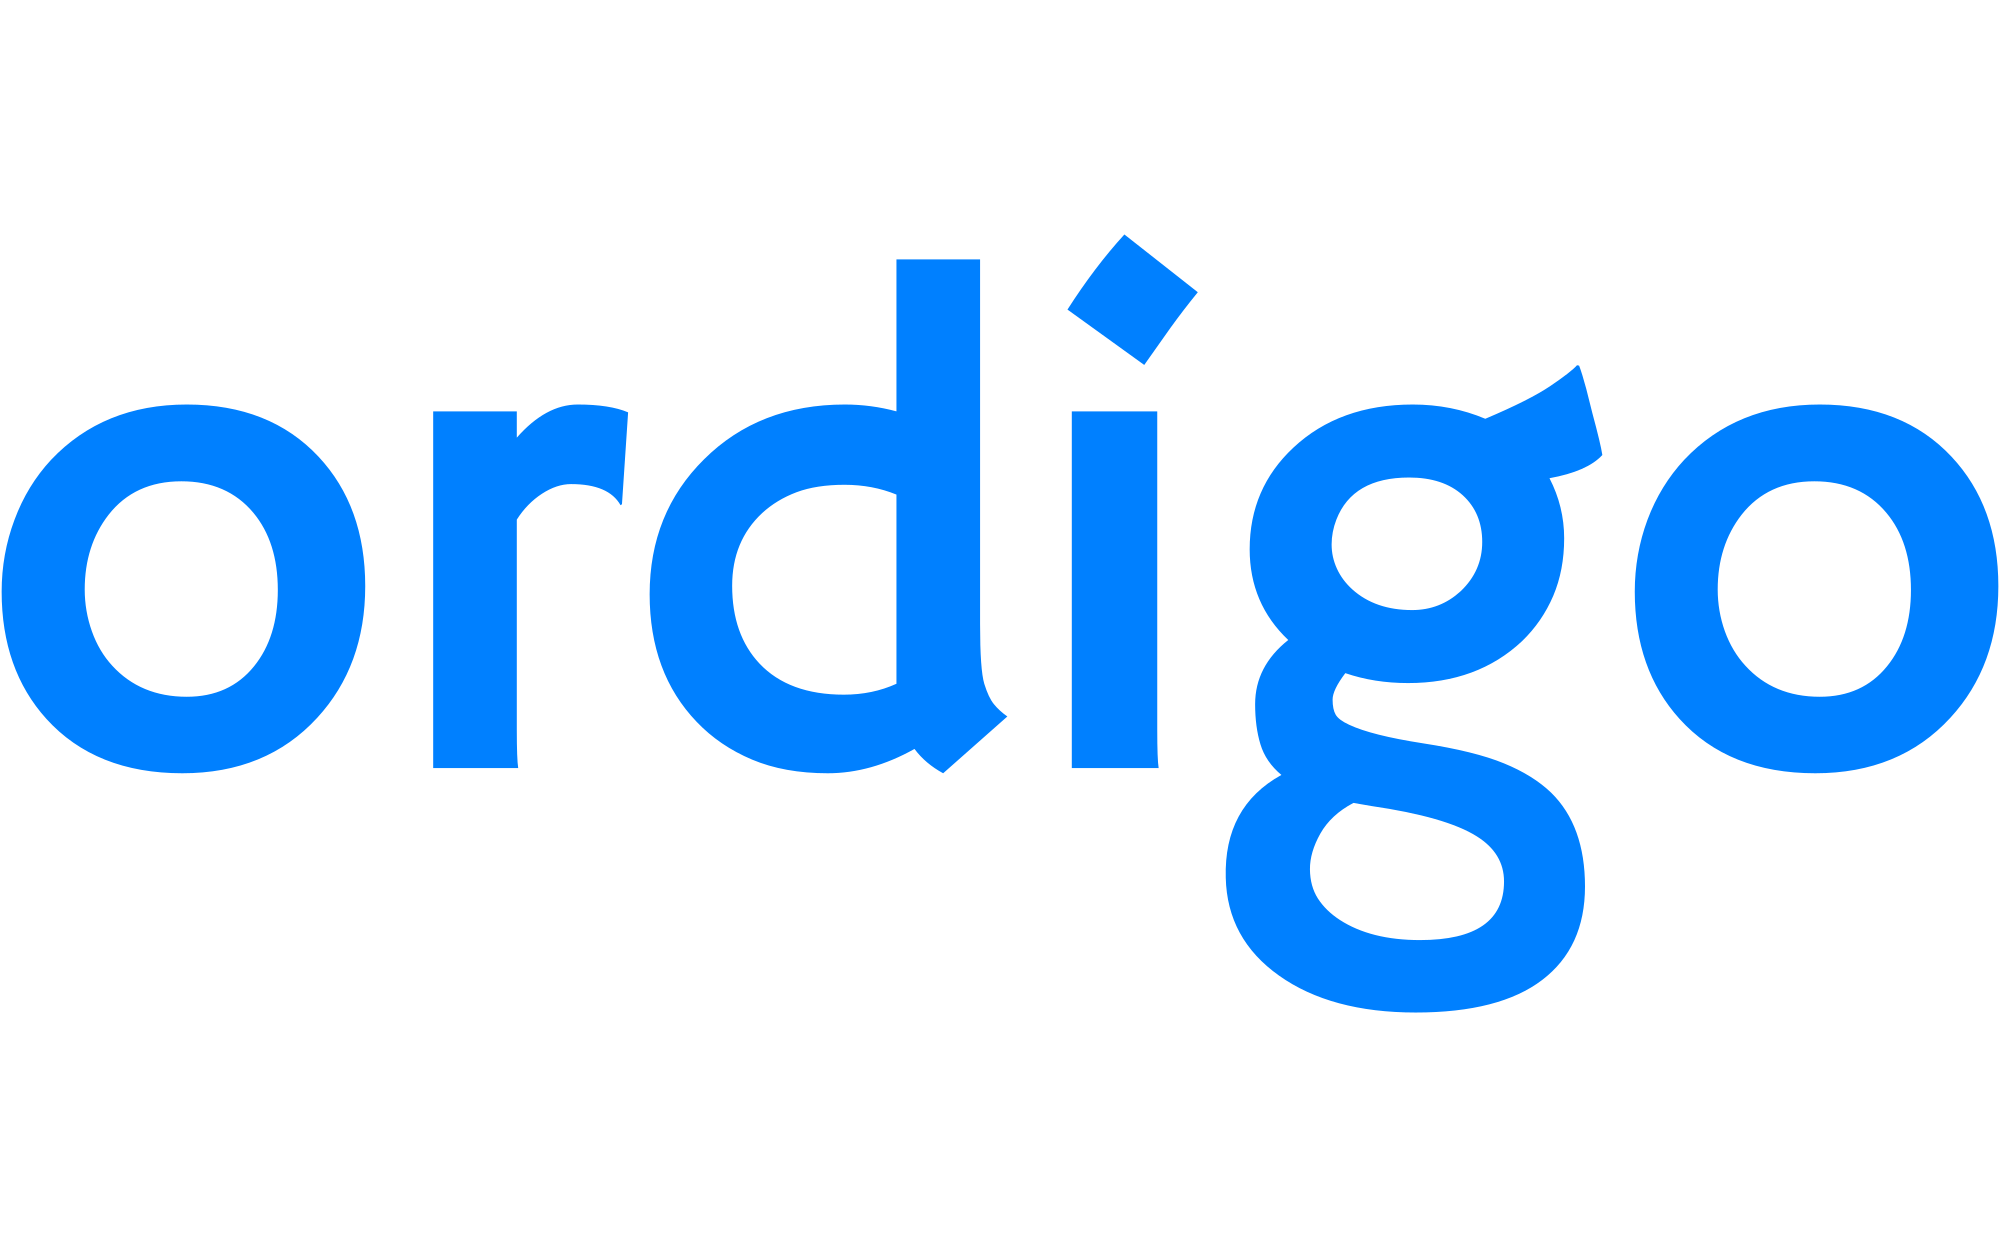 Ordigo logo